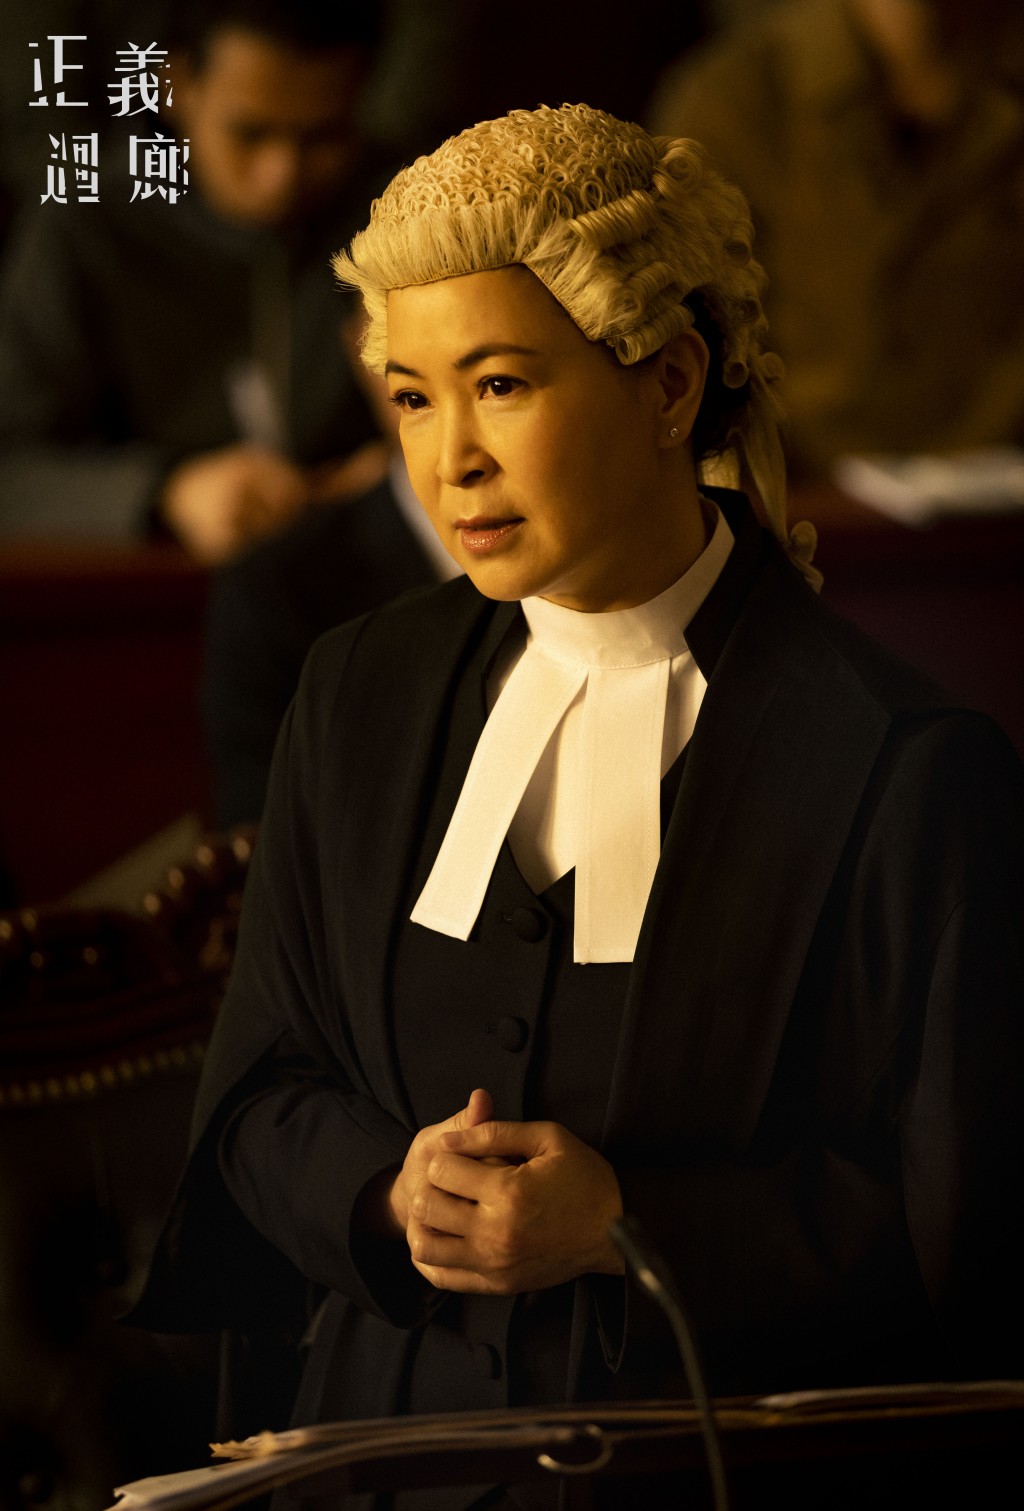 苏玉华饰演的是真实案件中的律师。